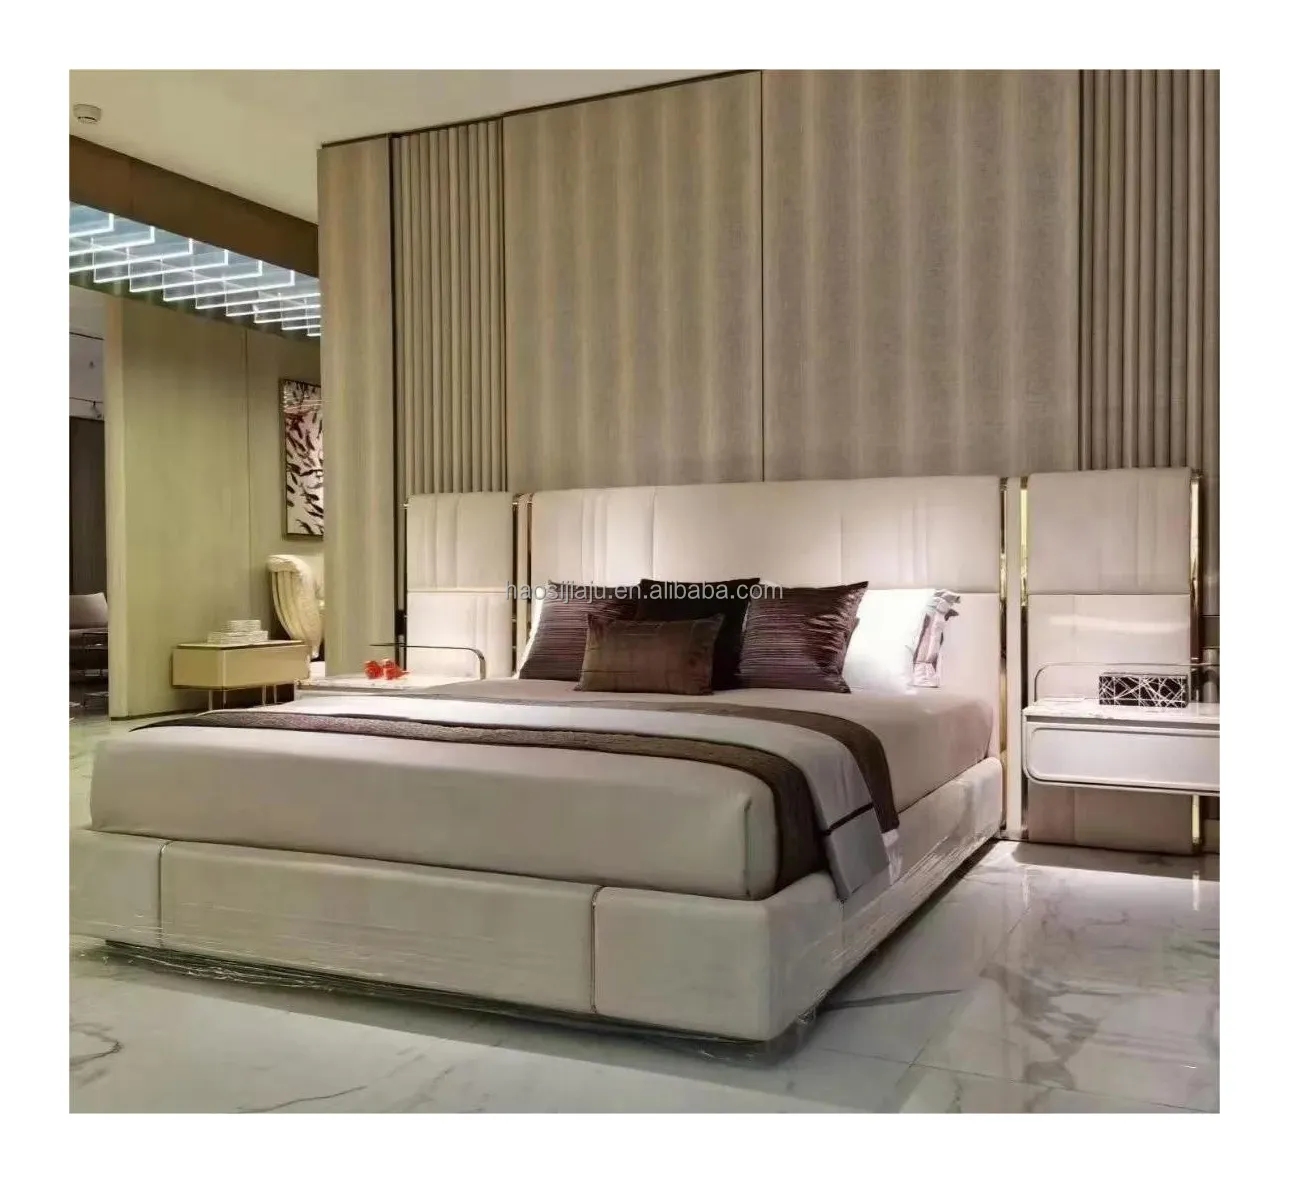 Modèle design style luxe italien lit en cuir chambre principale 1.8 mètres tapisserie d'ameublement d'hôtel haut de gamme lit NOVA